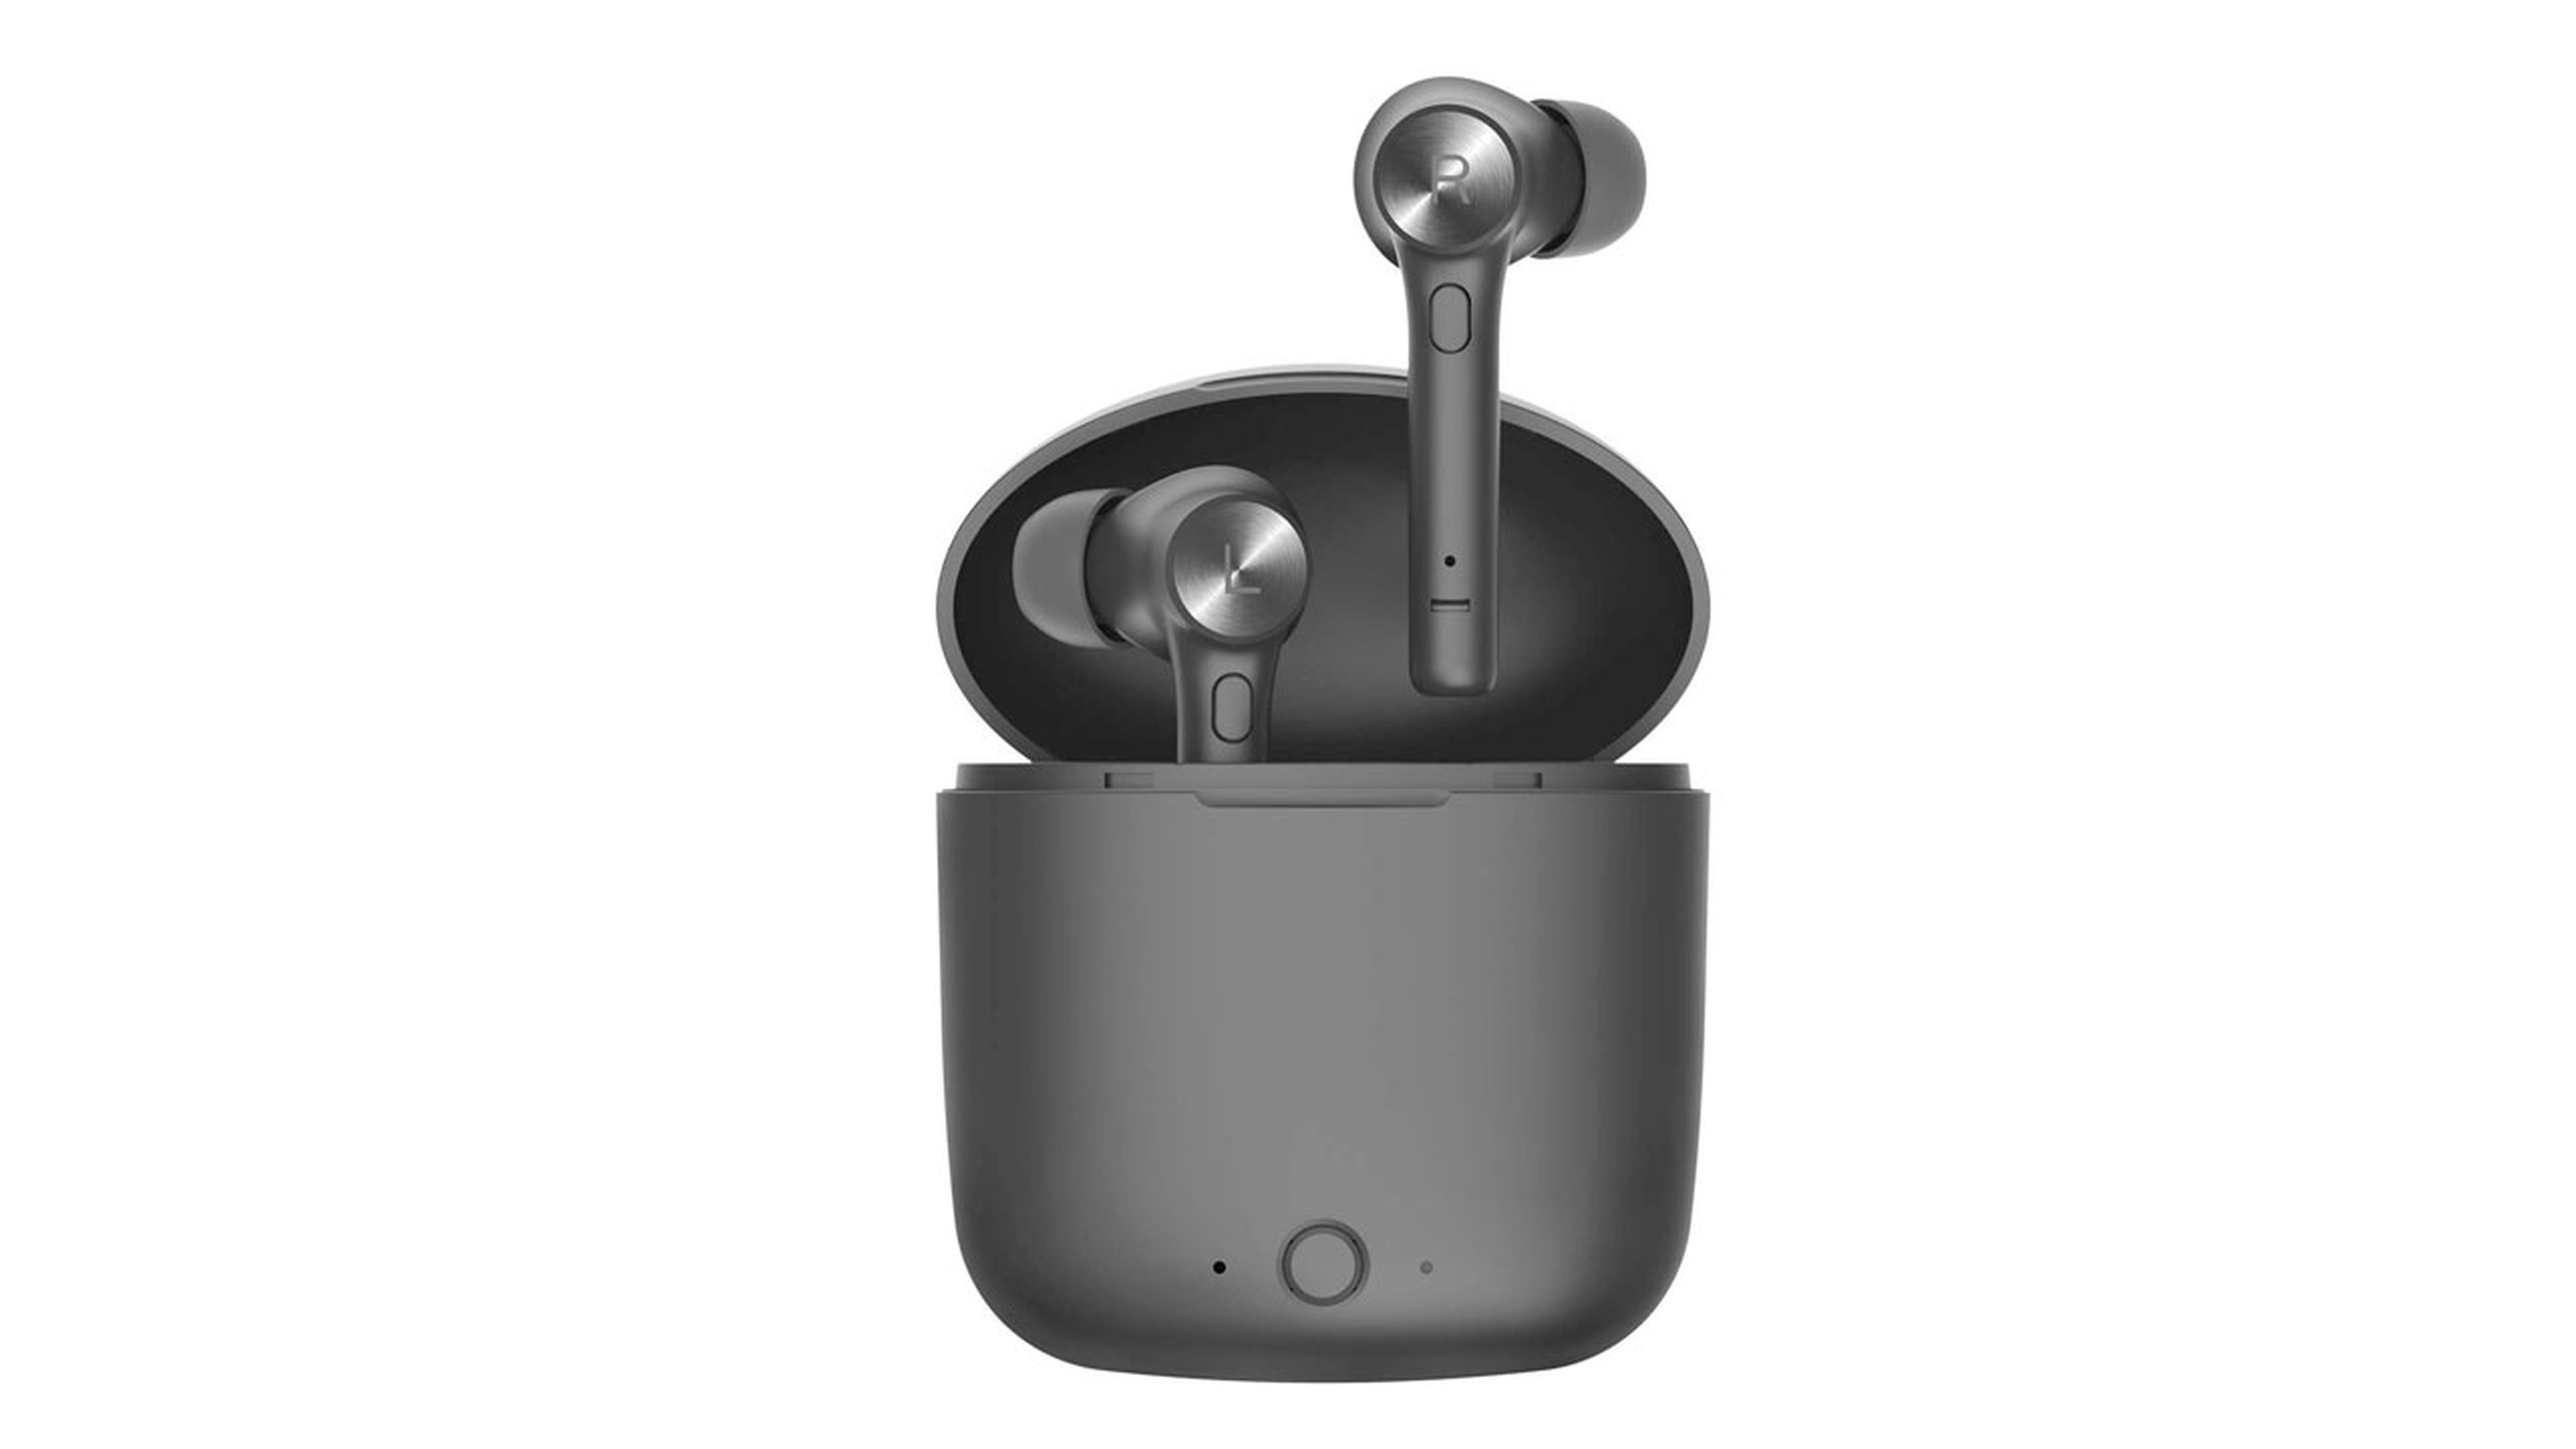 Oferta día Amazon: auriculares inalámbricos Bluetooth 5.0 por 20 euros